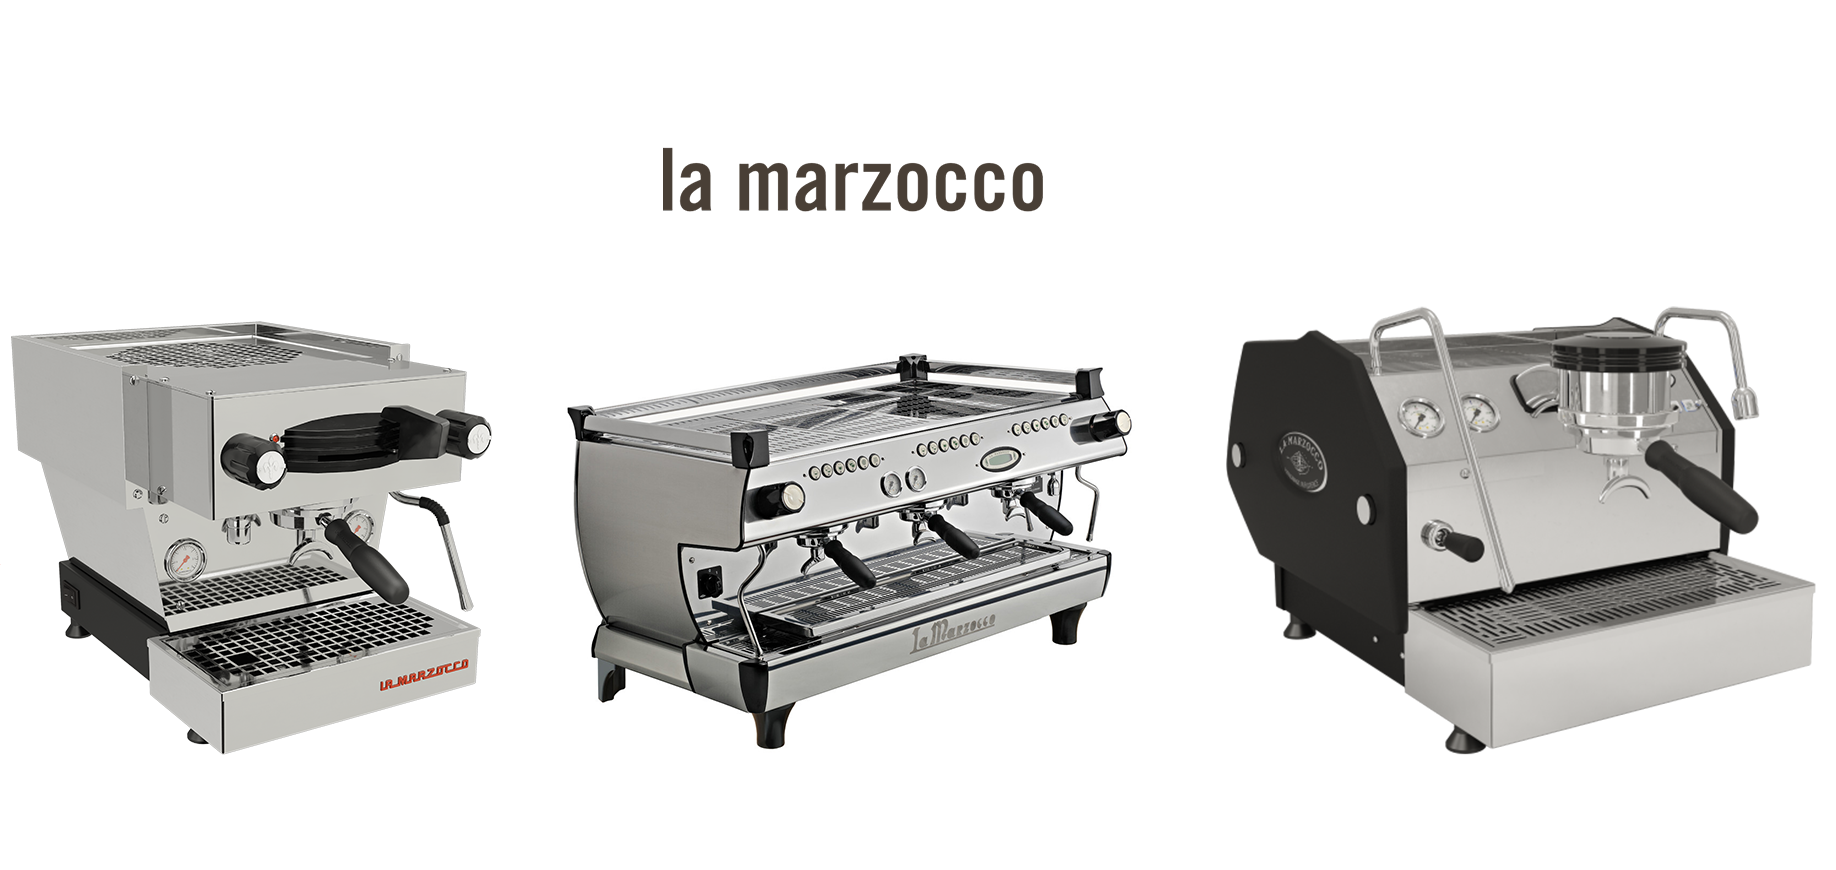 ماهي افضل ماكينة قهوة لامارزوكو وكيف تختار؟